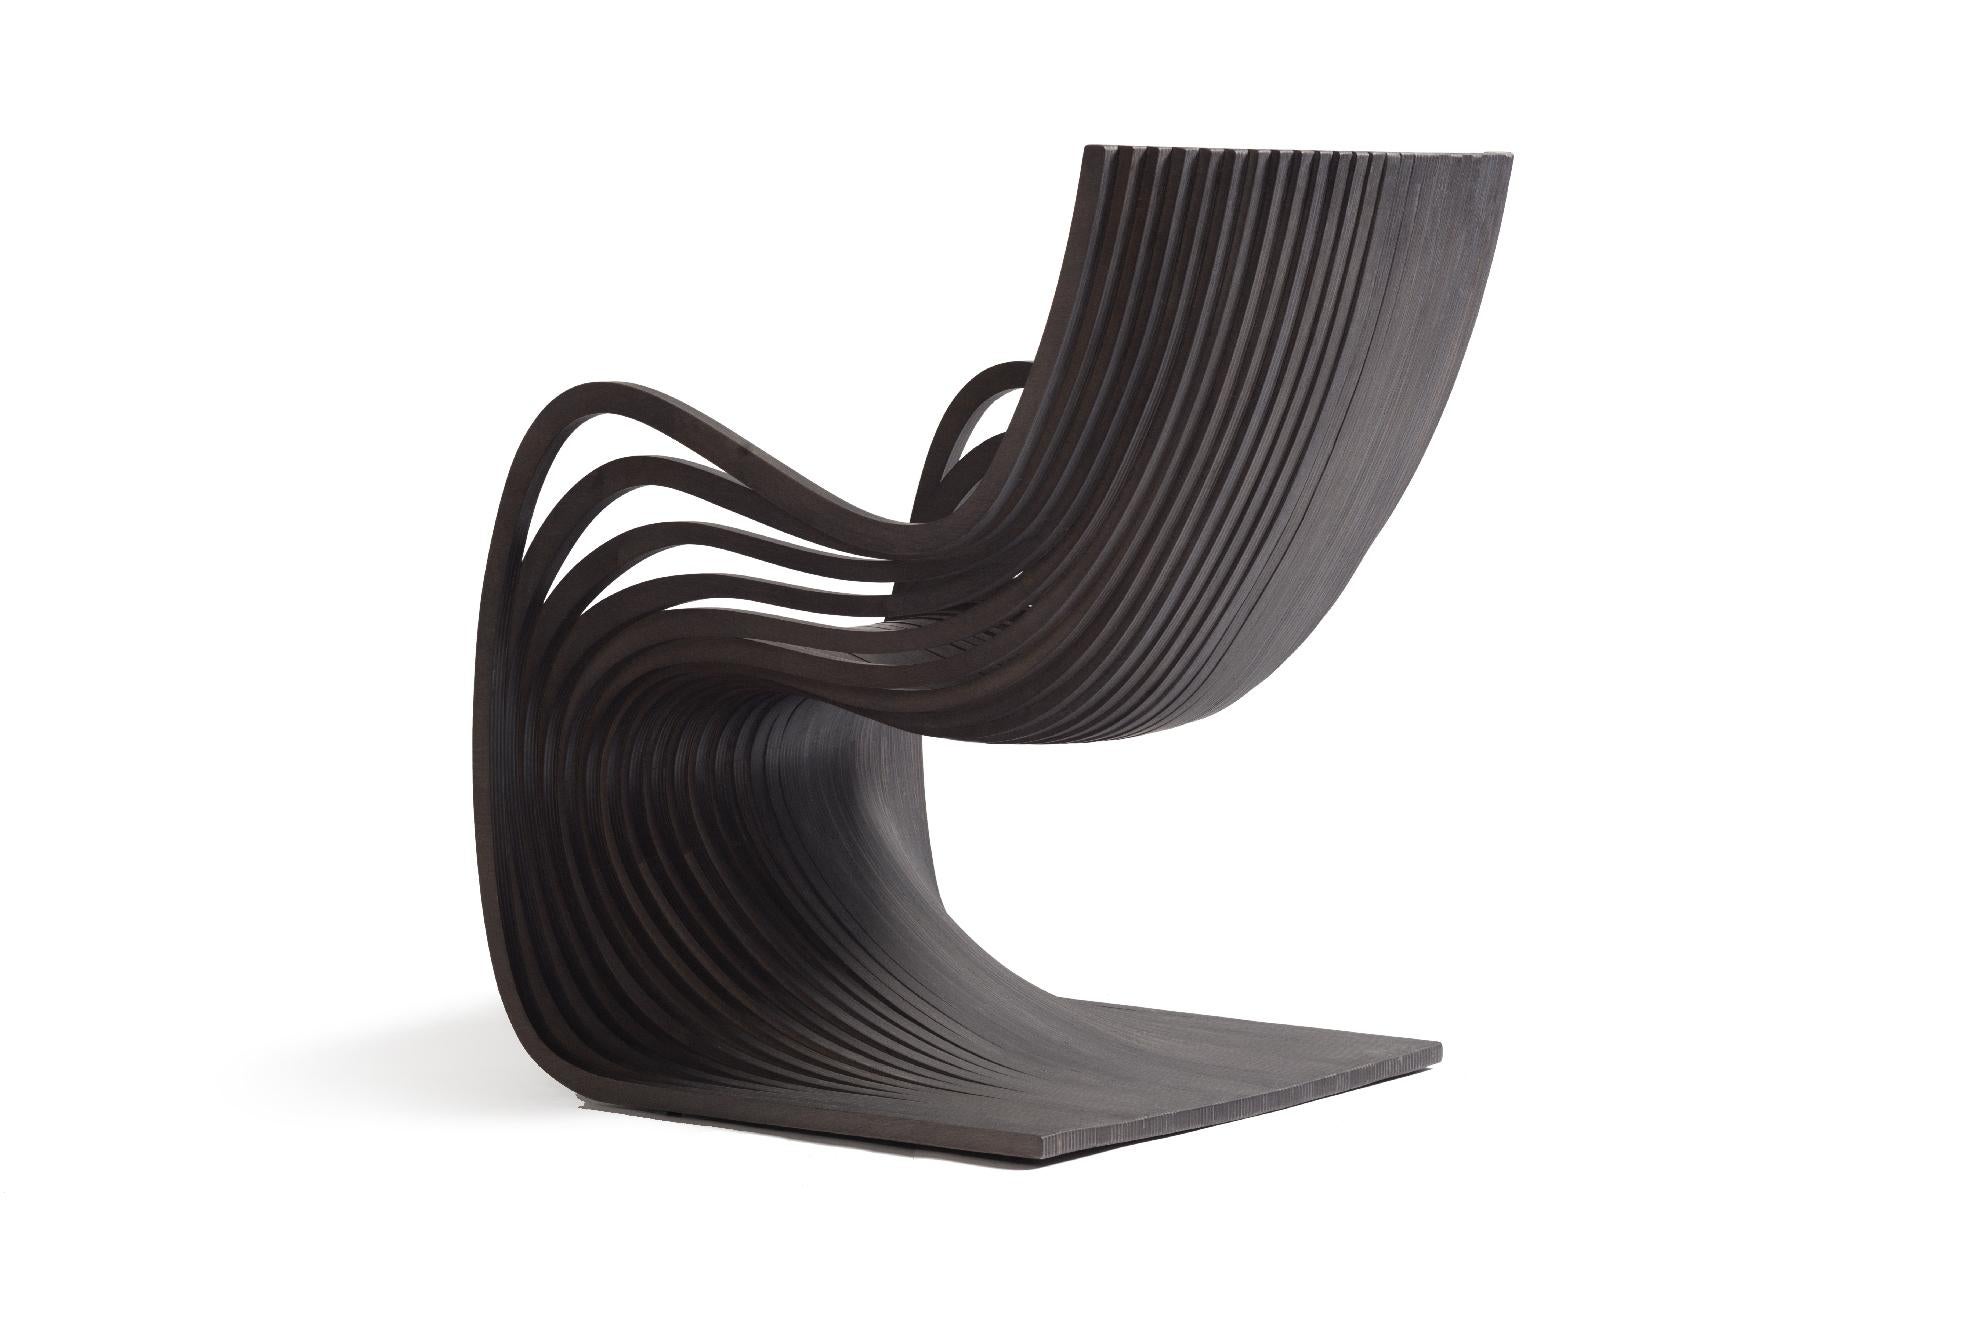 Laminé Chaise Pipo de Piegatto, une chaise sculpturale contemporaine en vente